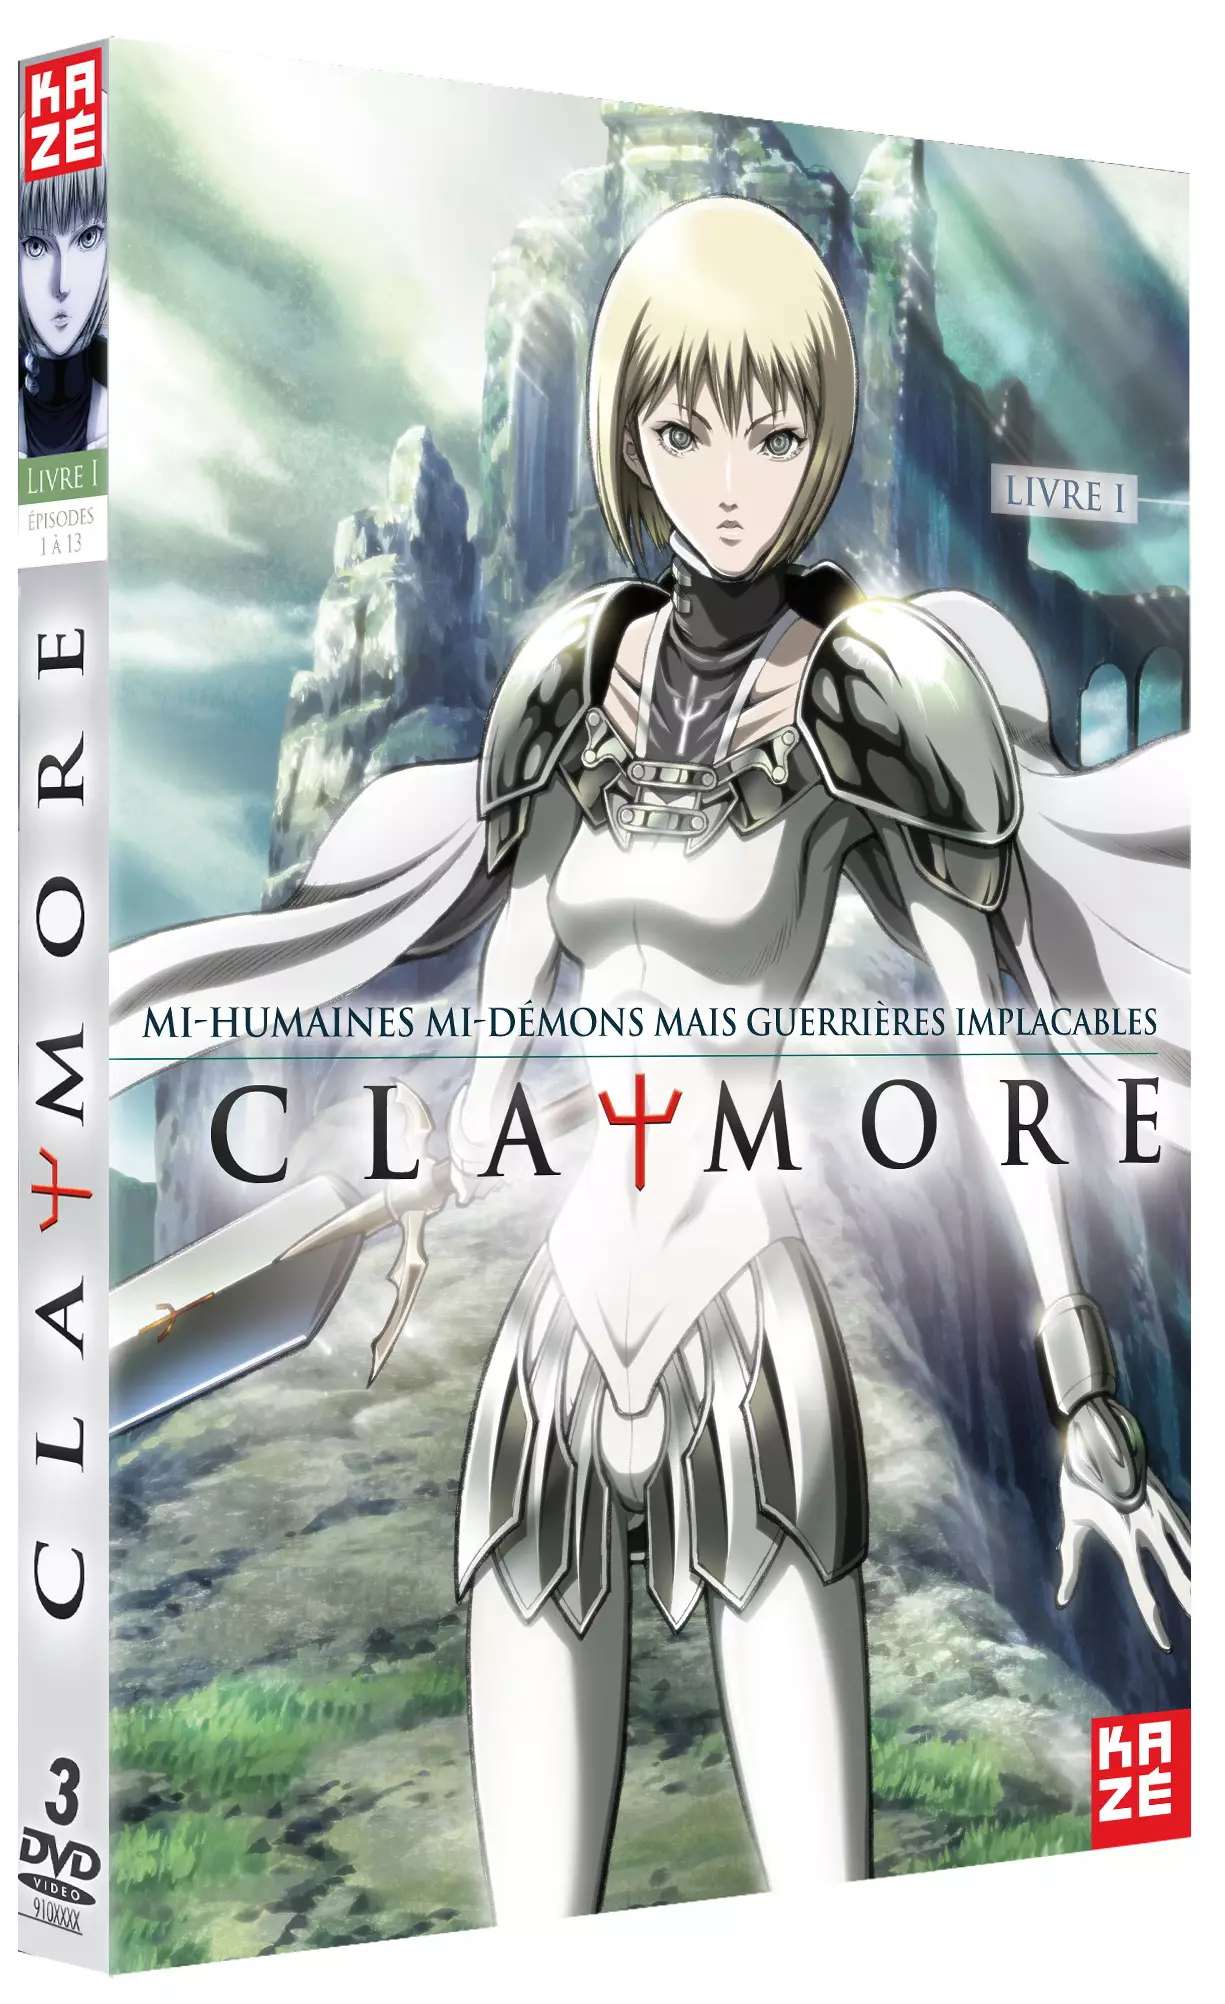 vidéo manga - Claymore Vol.1